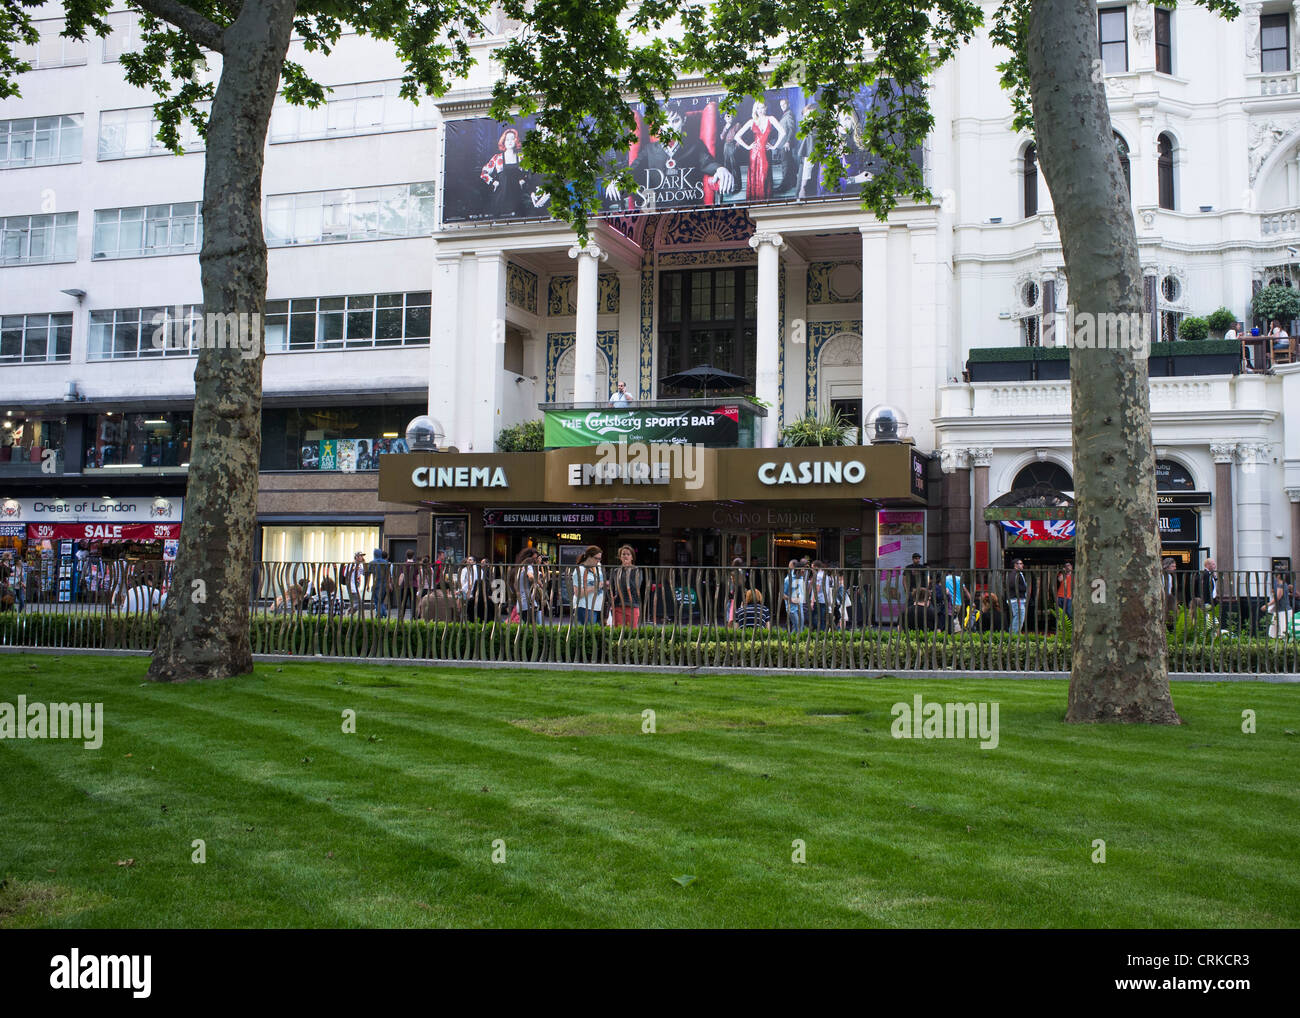 Das Empire-Kino von Leicester Square Gardens, kurz nachdem die Gärten im Jahr 2012 renoviert wurden Stockfoto